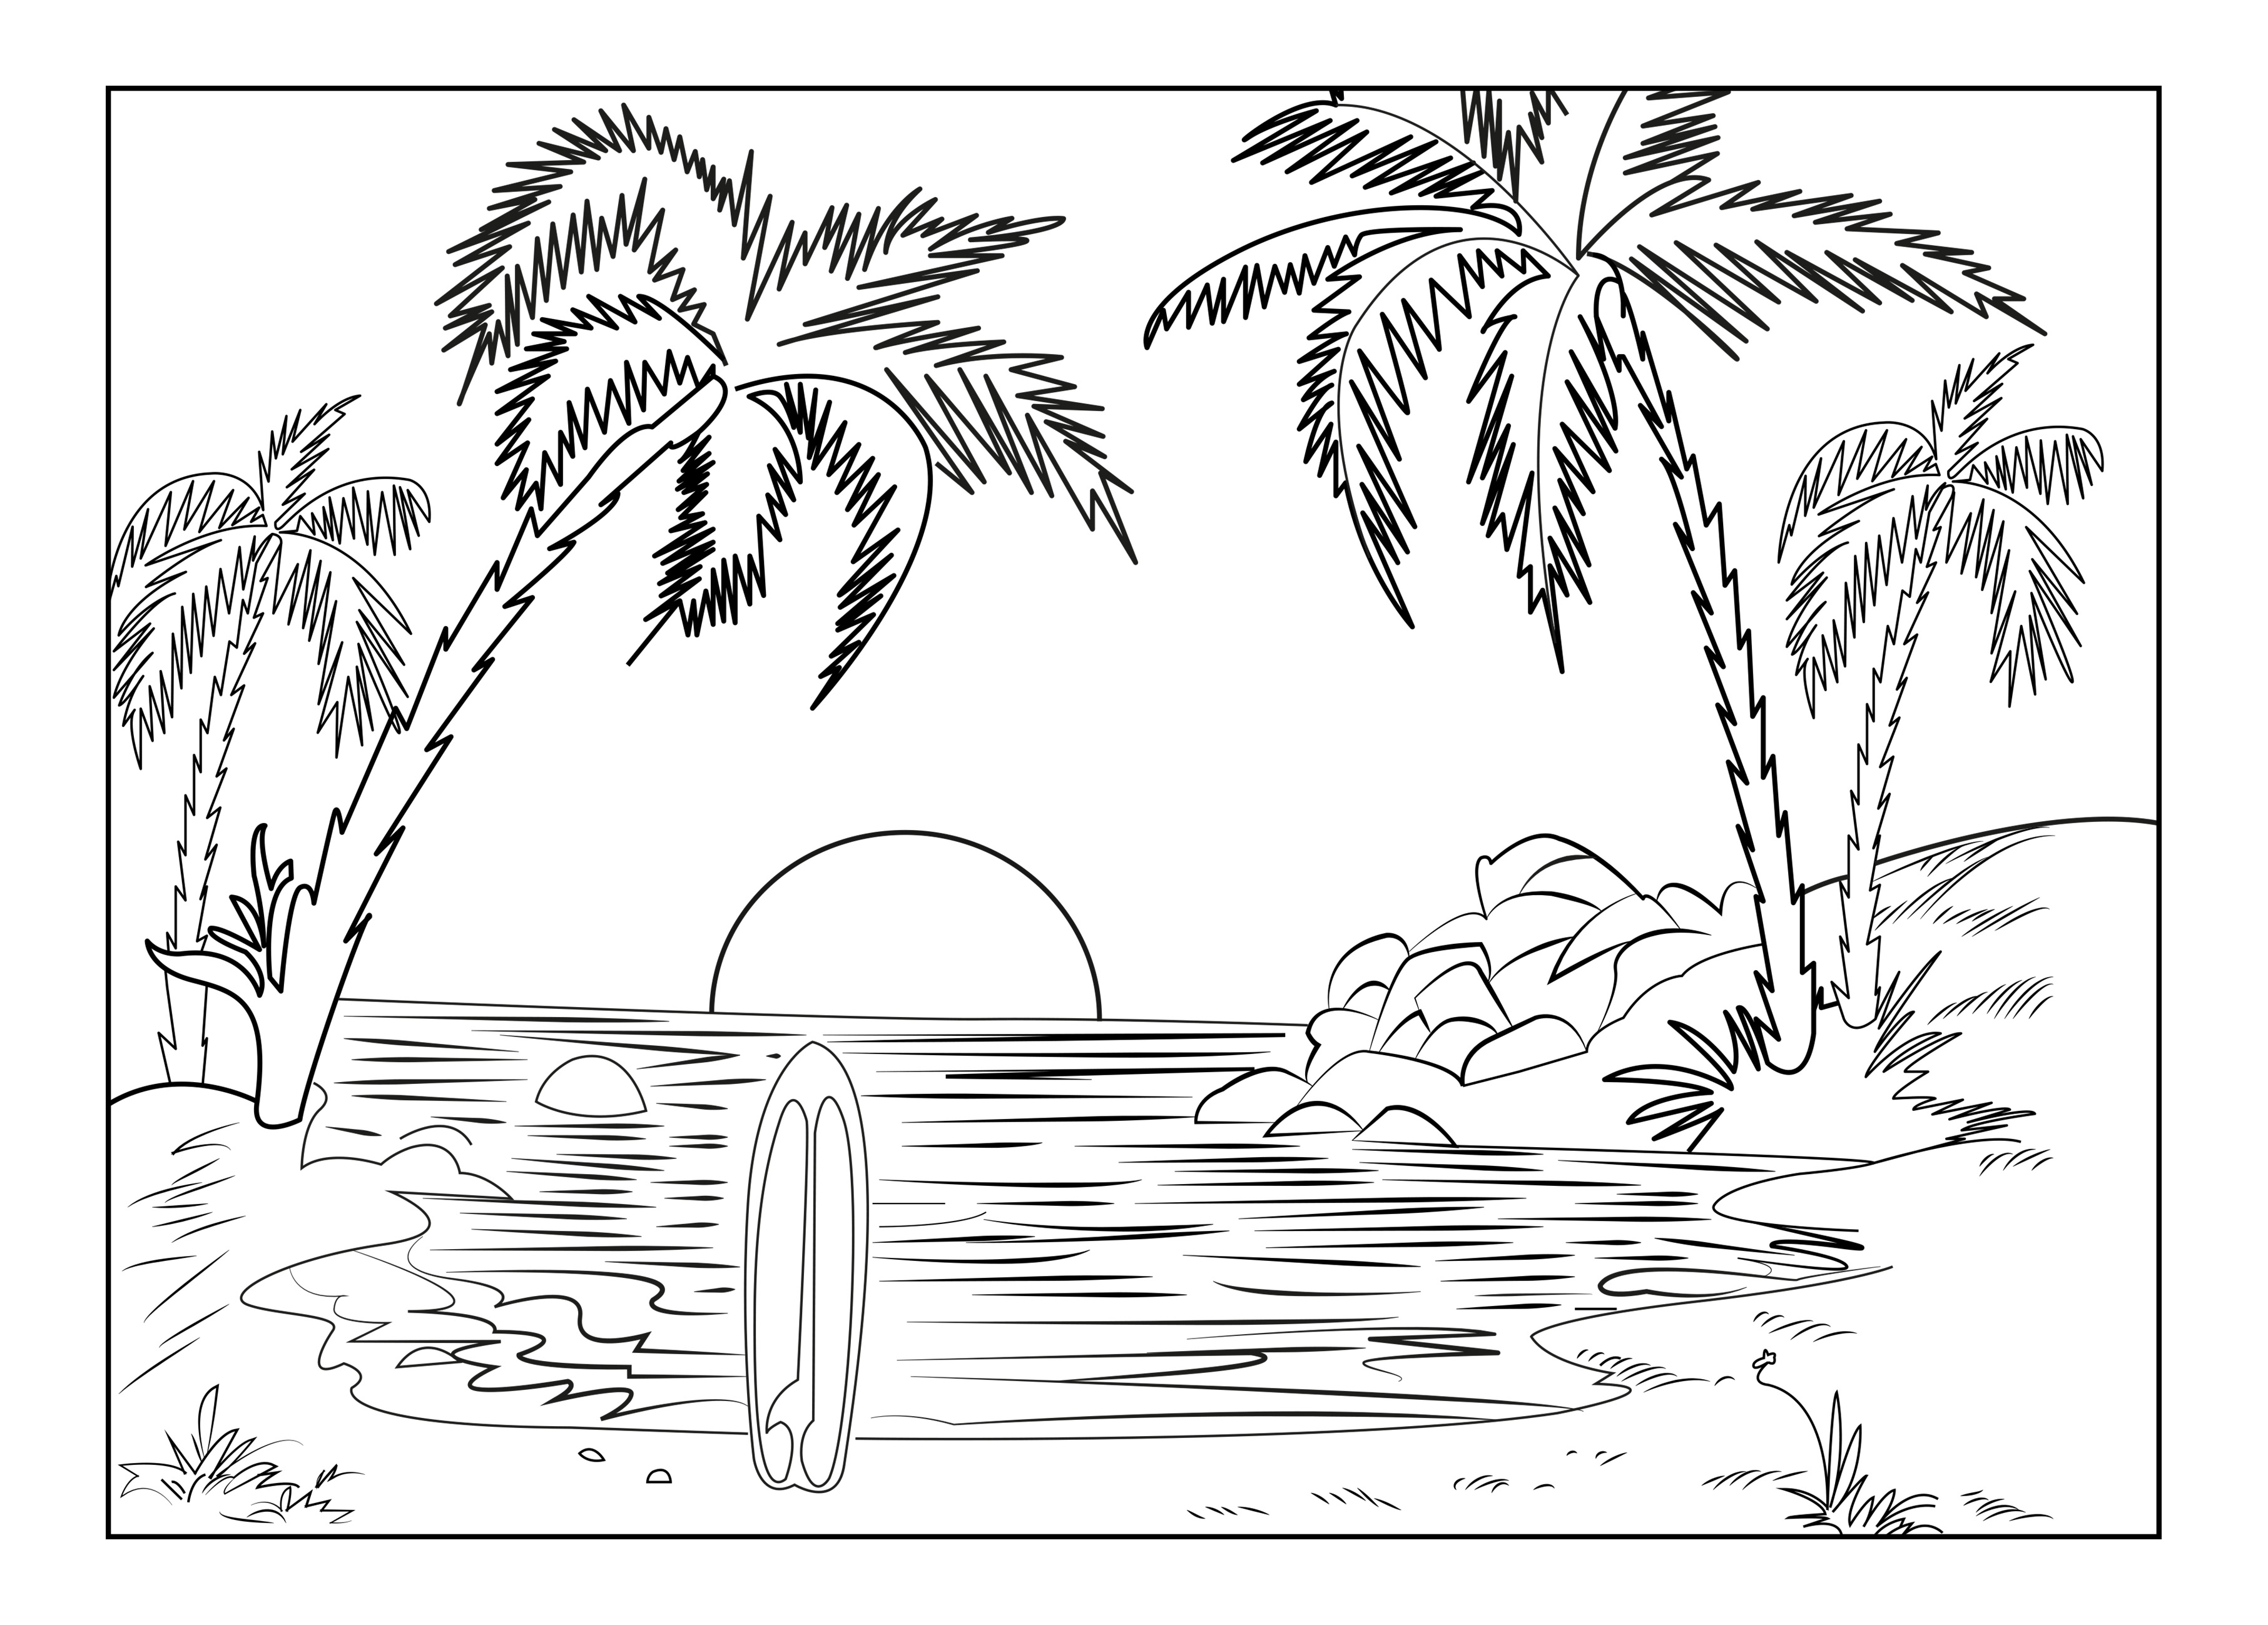 La playa de una isla paradisíaca, con palmeras, una tabla de surf y el sol poniente, Artista : Celine